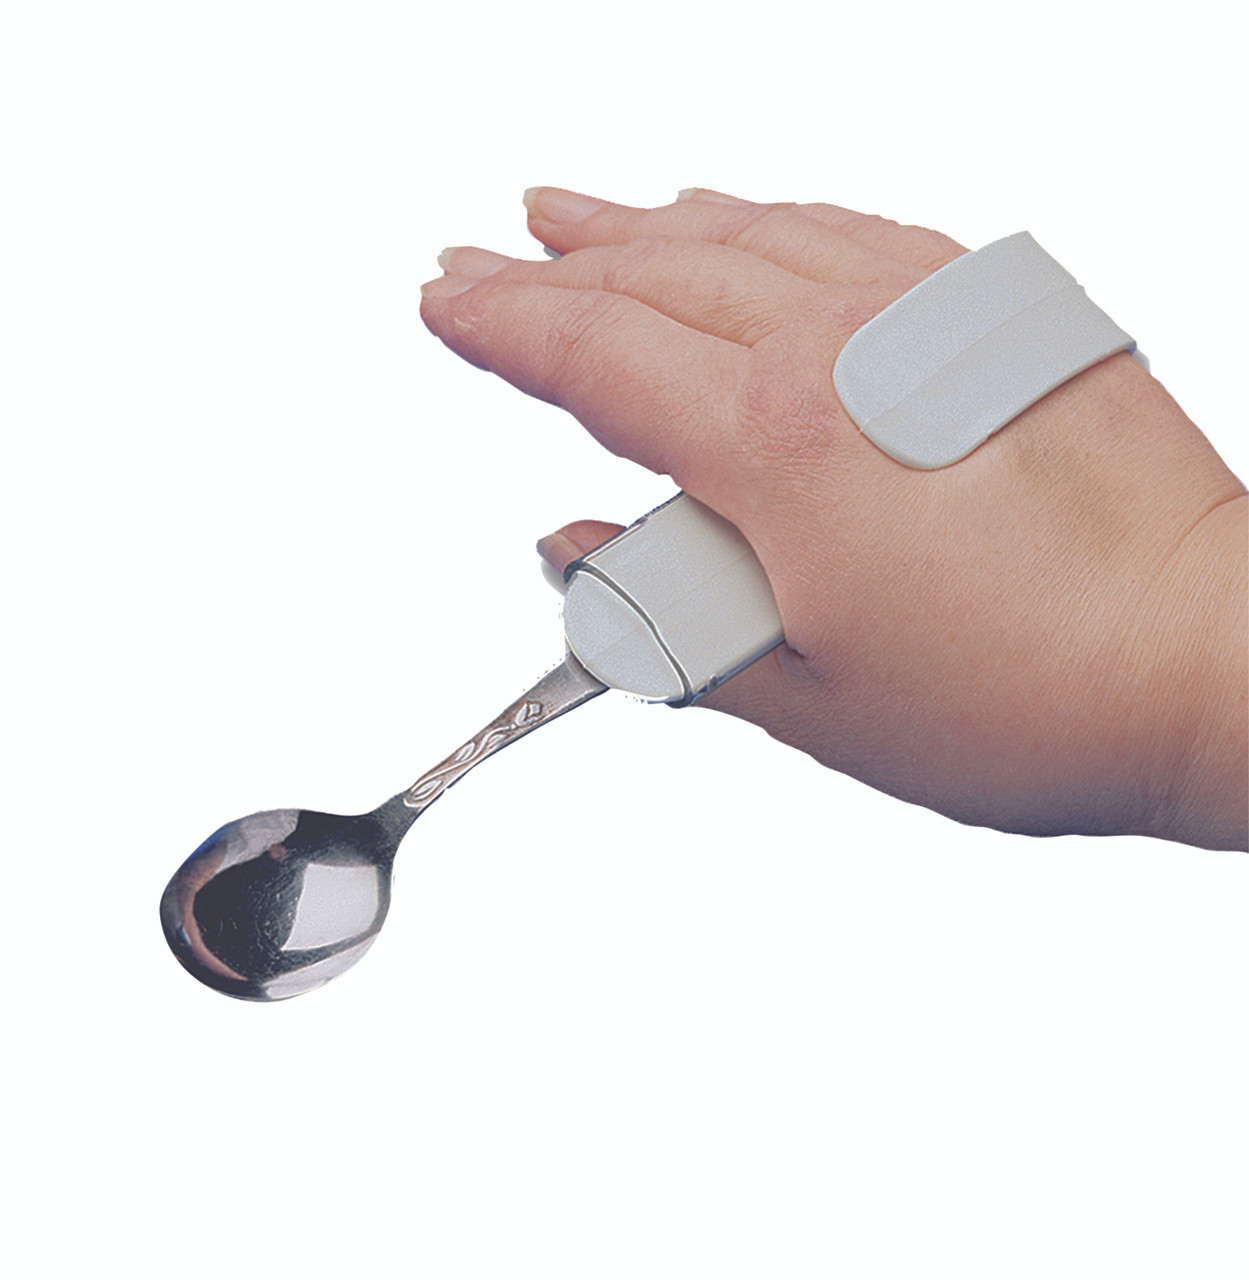 Utensil holder, hand clip